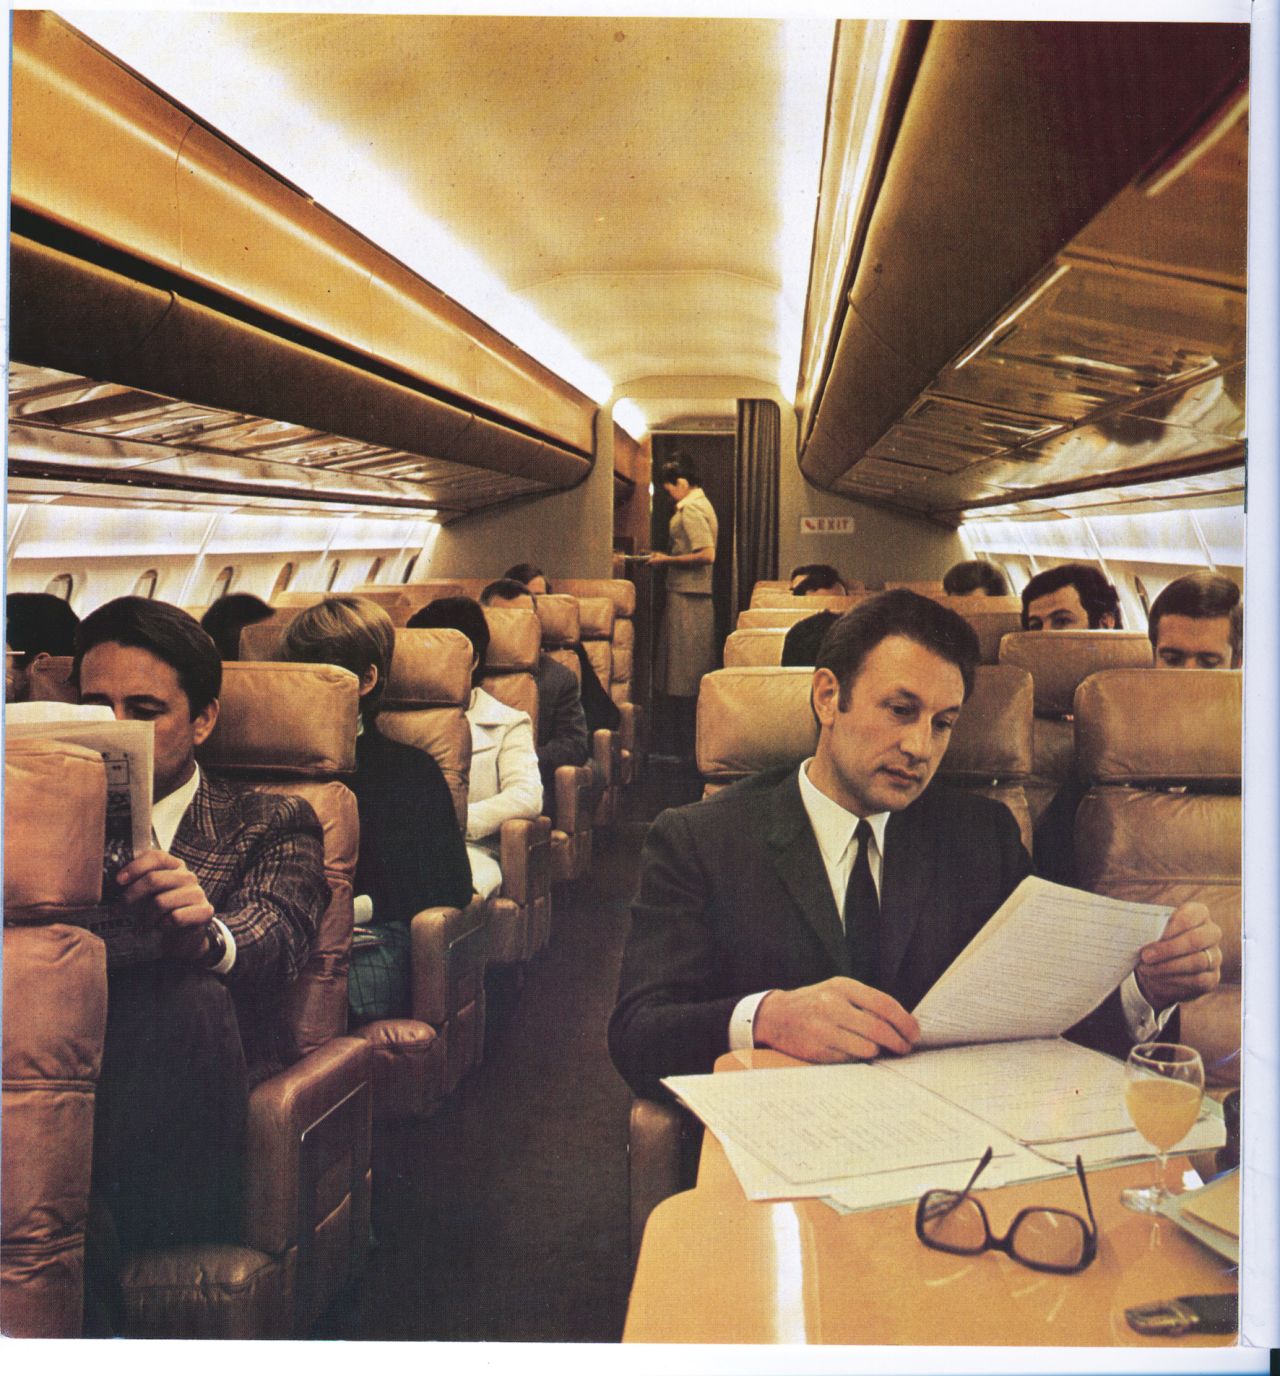 Original interior design of a British Airways Concorde cabin in the 1970s.